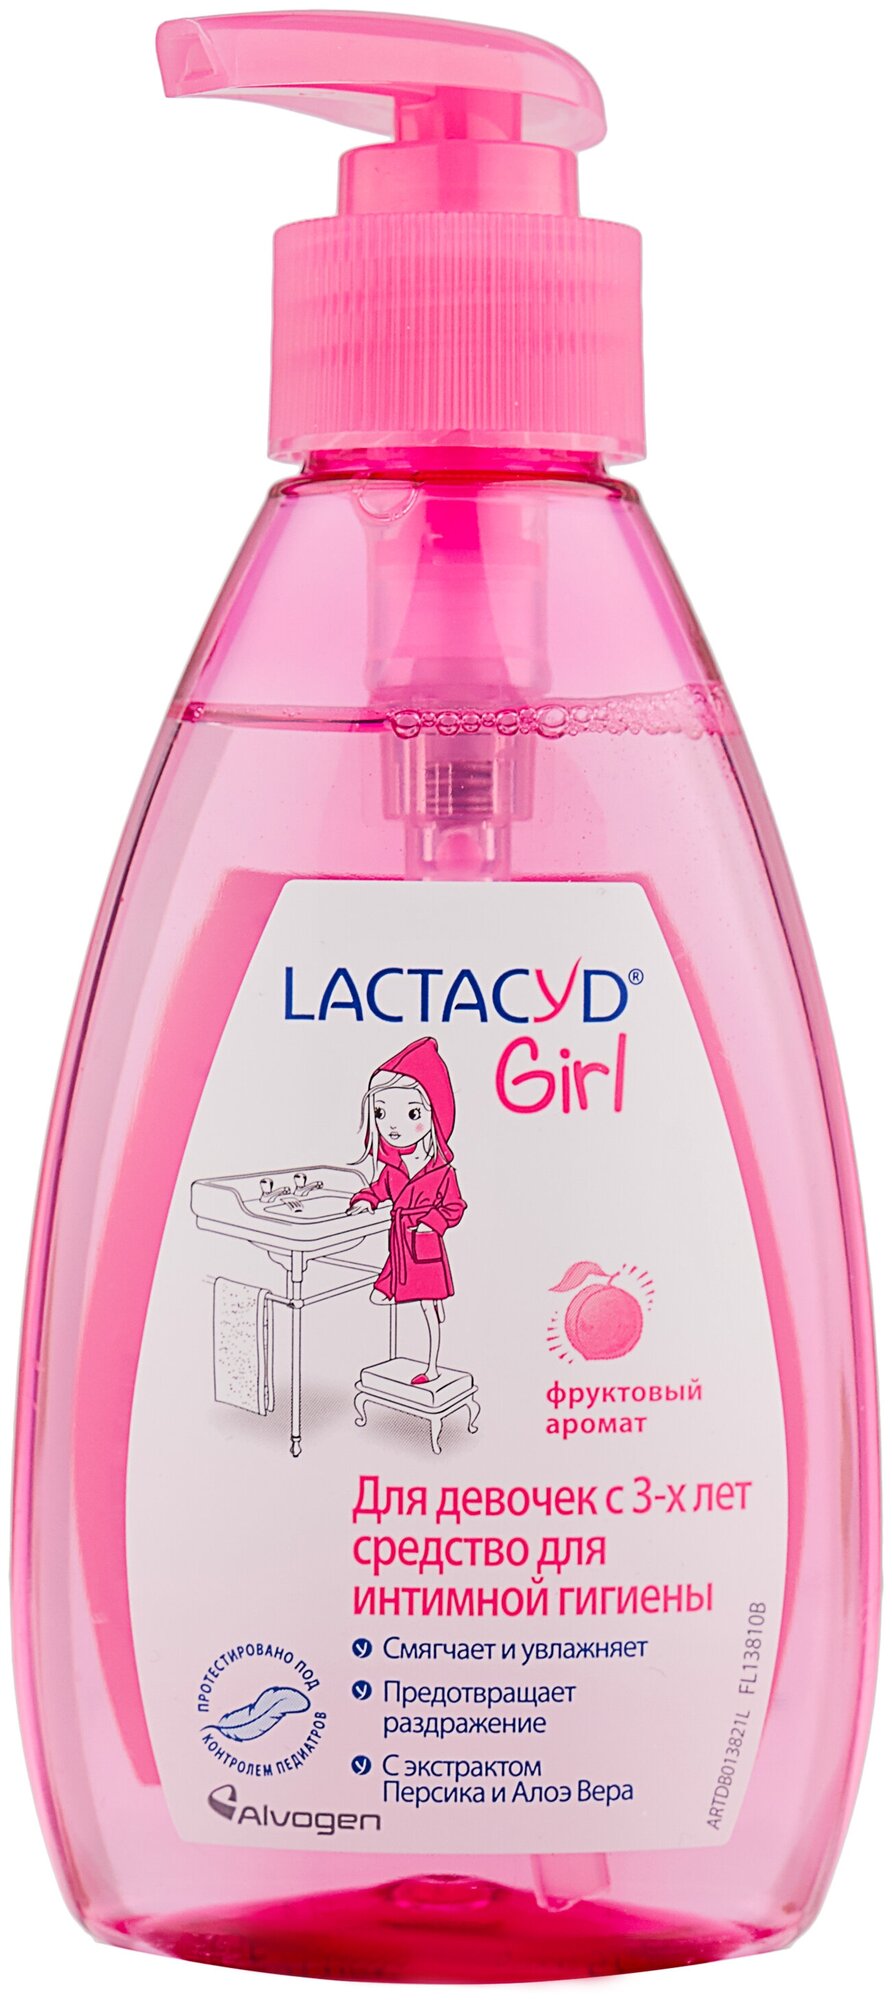 Lactacyd средство для интимной гигиены Girl